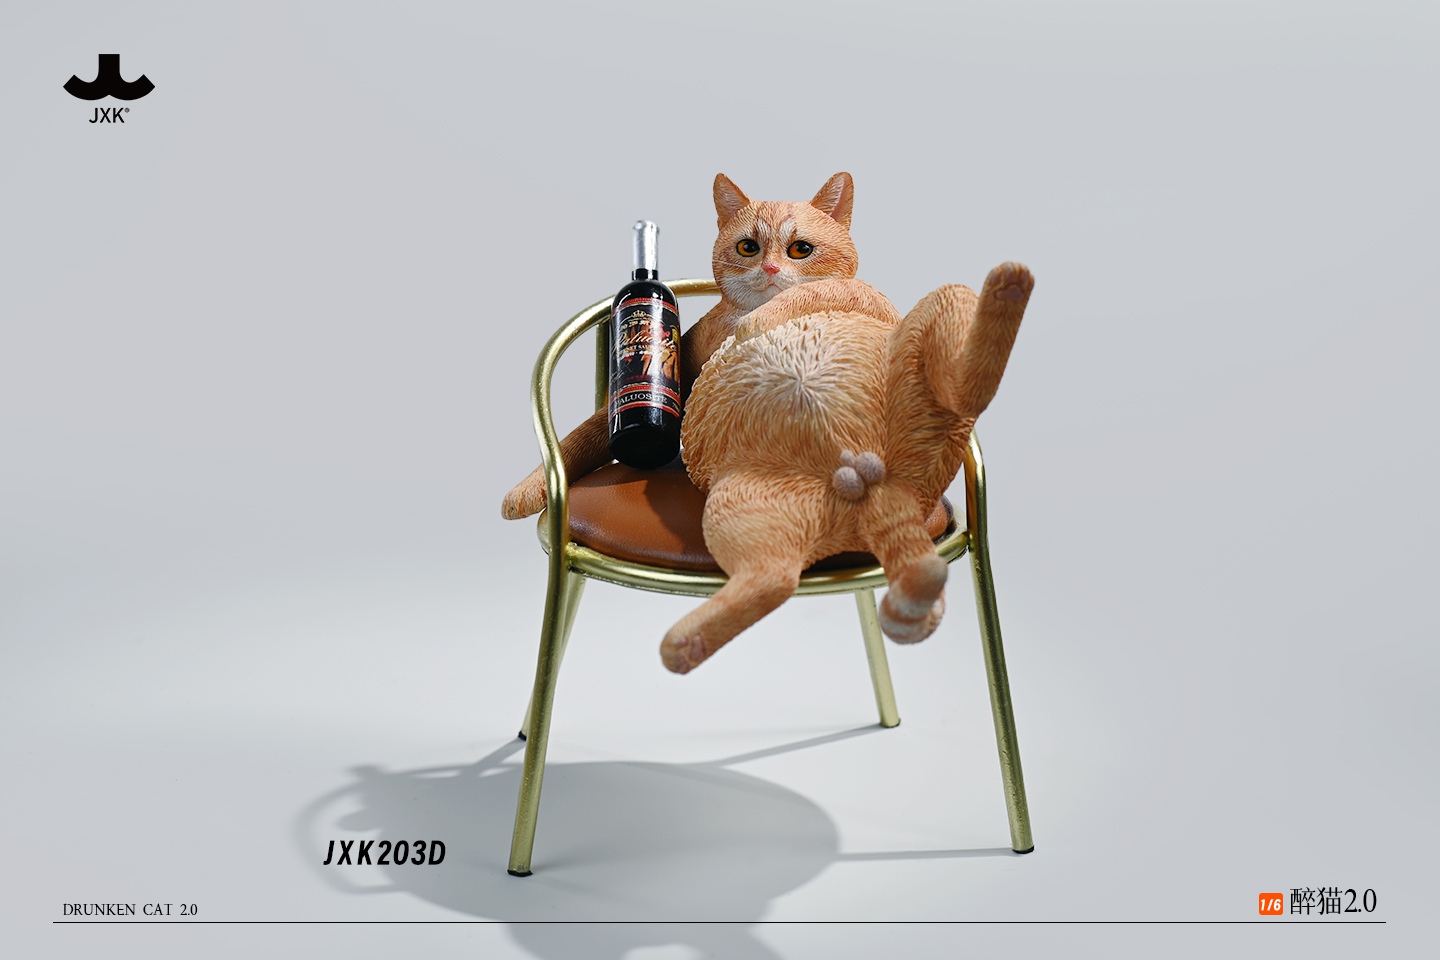 DrunkenCat - NEW PRODUCT: JXK - Drunken Cat 2.0 0953